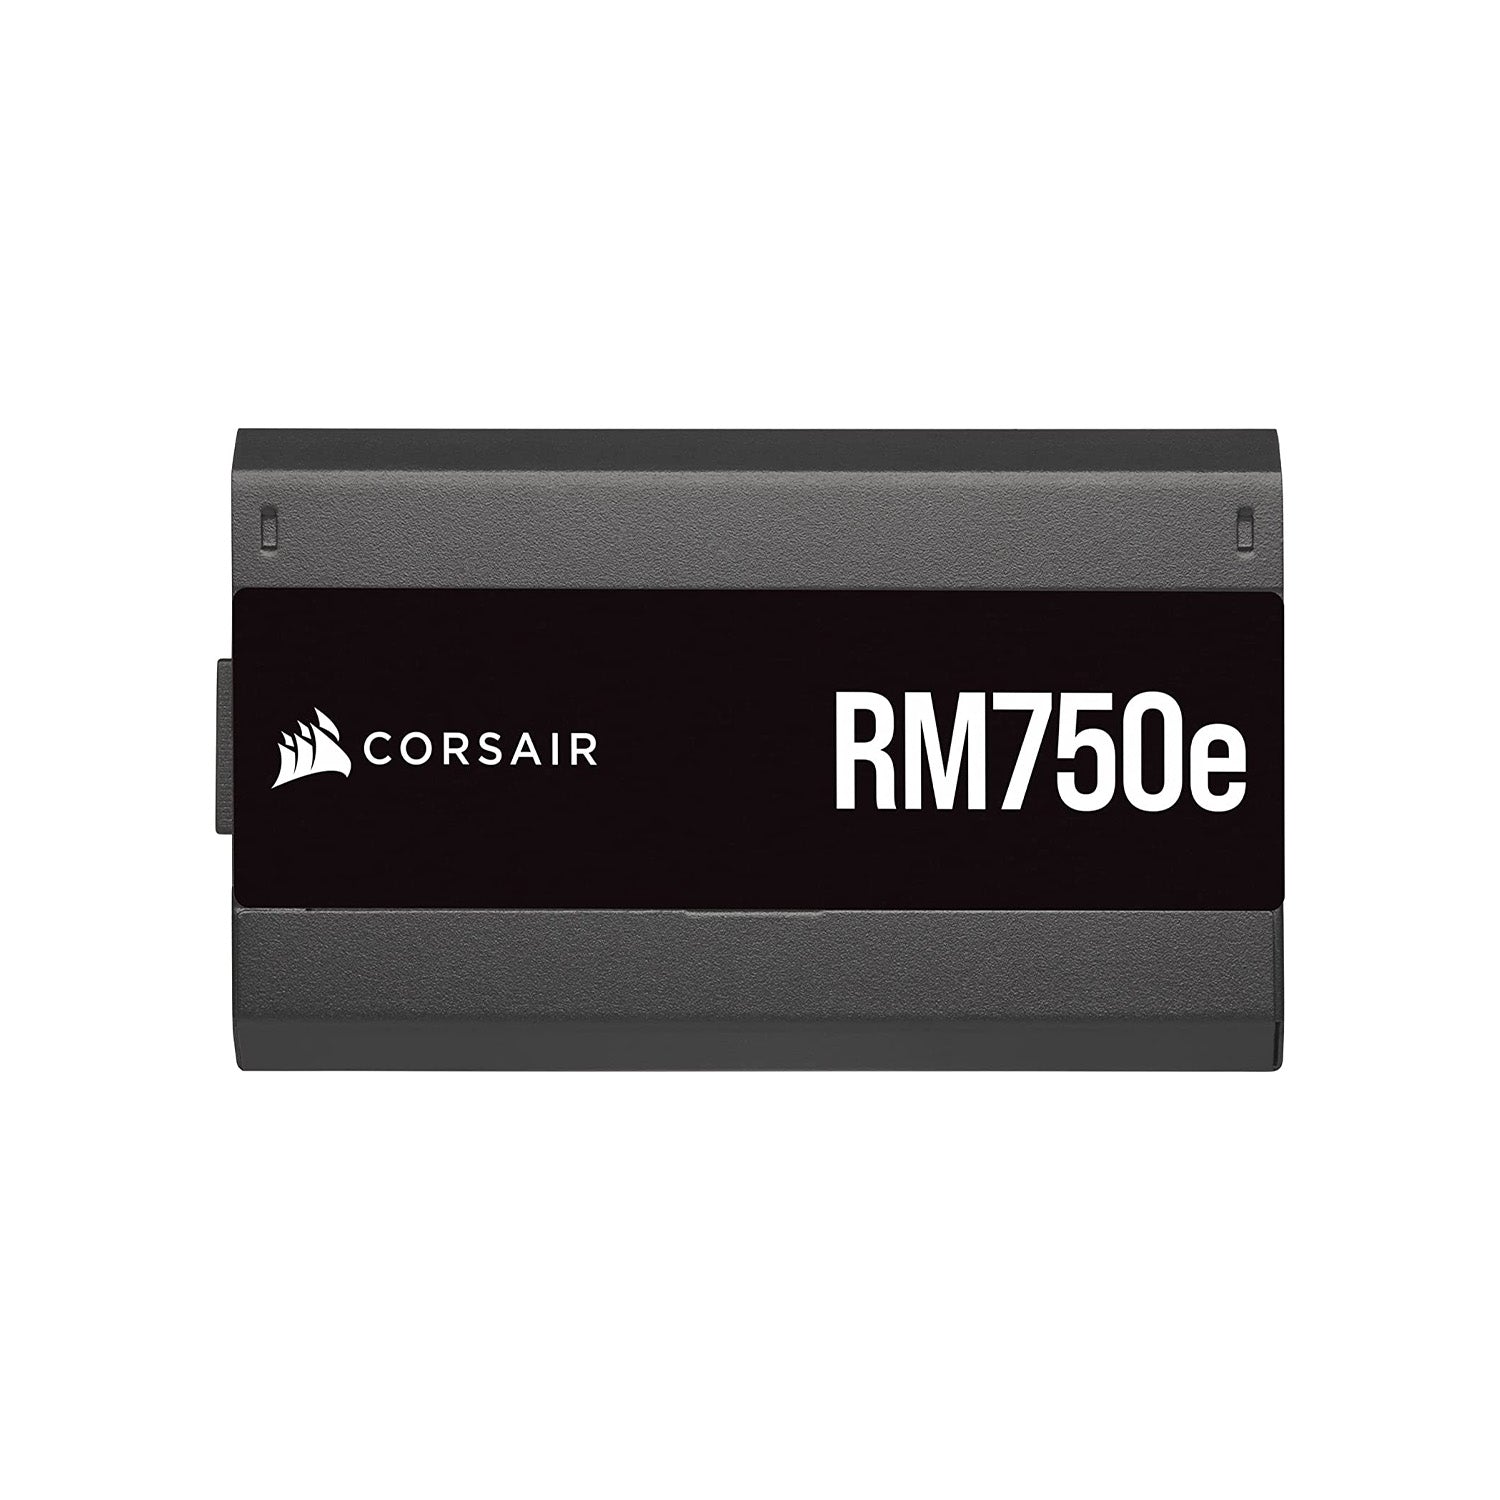 CORSAIR RMe-Serie, RM 750e, 750 Watt